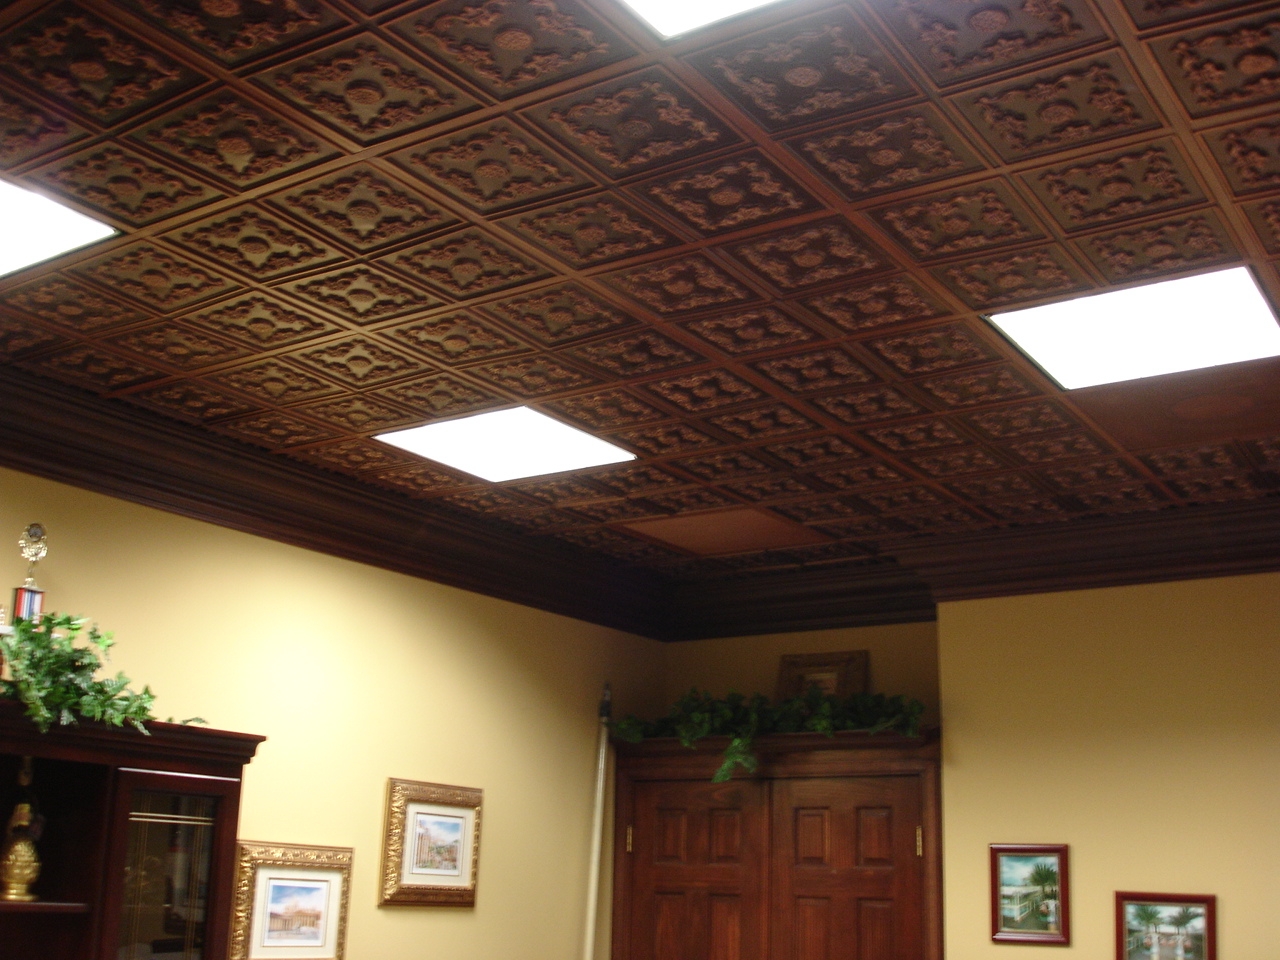 Decorative Drop Ceiling Tiles Wood Decorative Drop Ceiling Tiles Wood drop ceiling tiles photos tile designs 1280 X 960